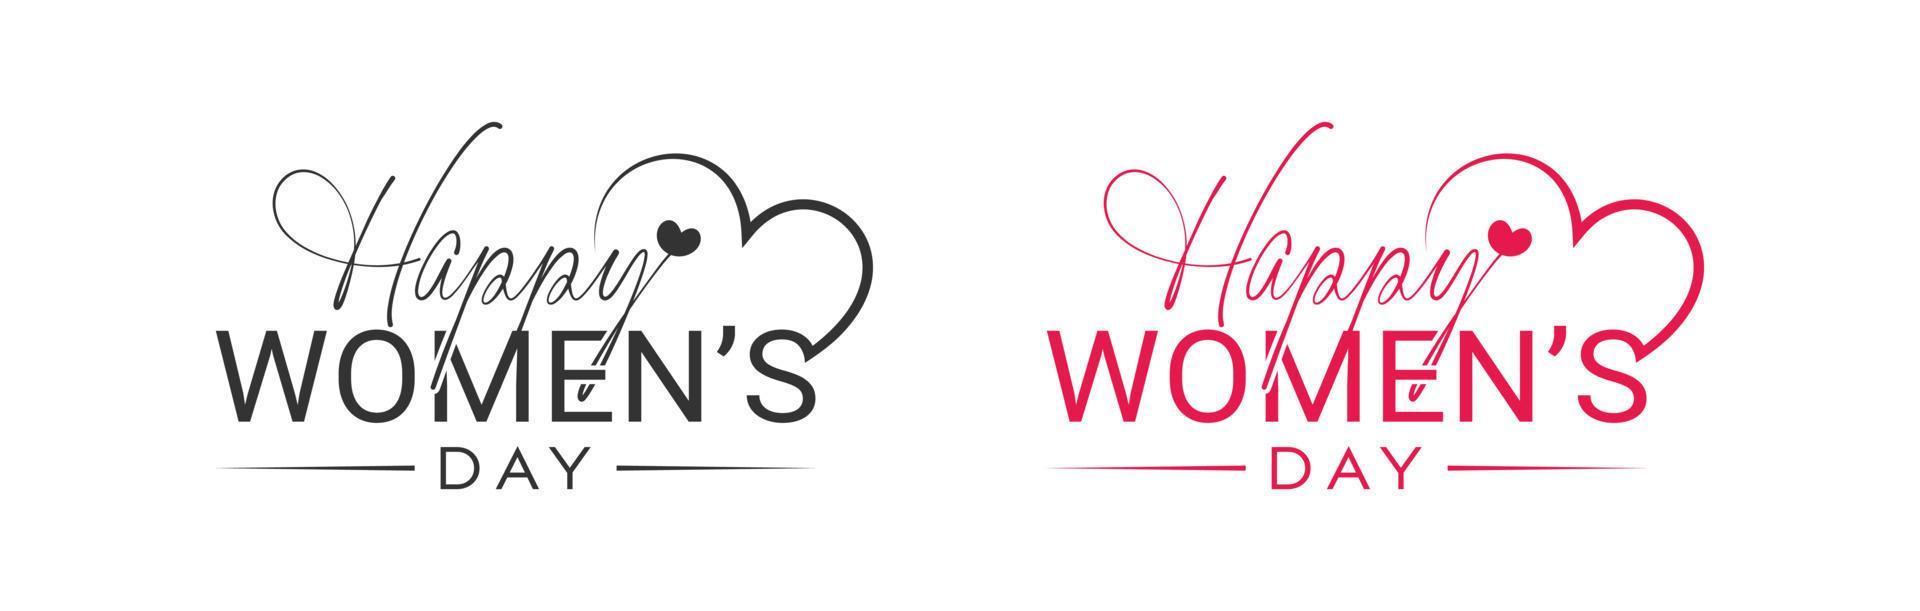 internacional encantador contento De las mujeres día logo diseño, 8 marzo contento De las mujeres día con amor vector logo